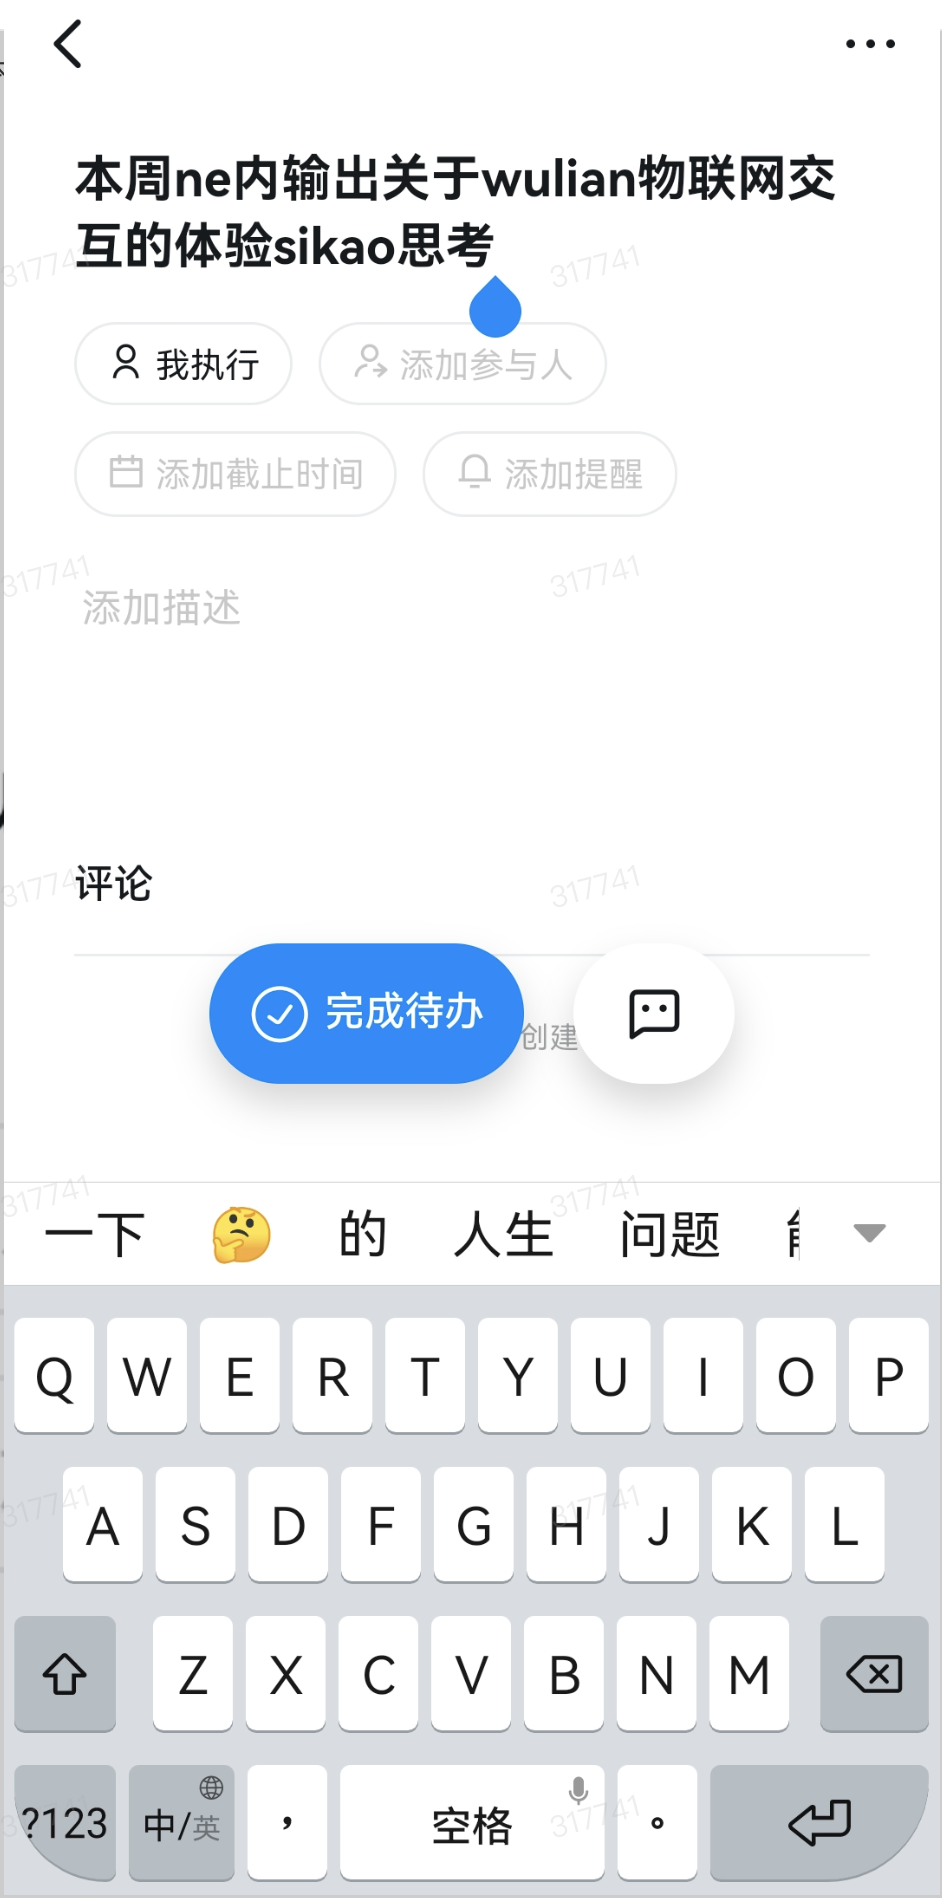 支付宝小程序textarea 组件输入汉字时会带上拼音支付宝开放社区